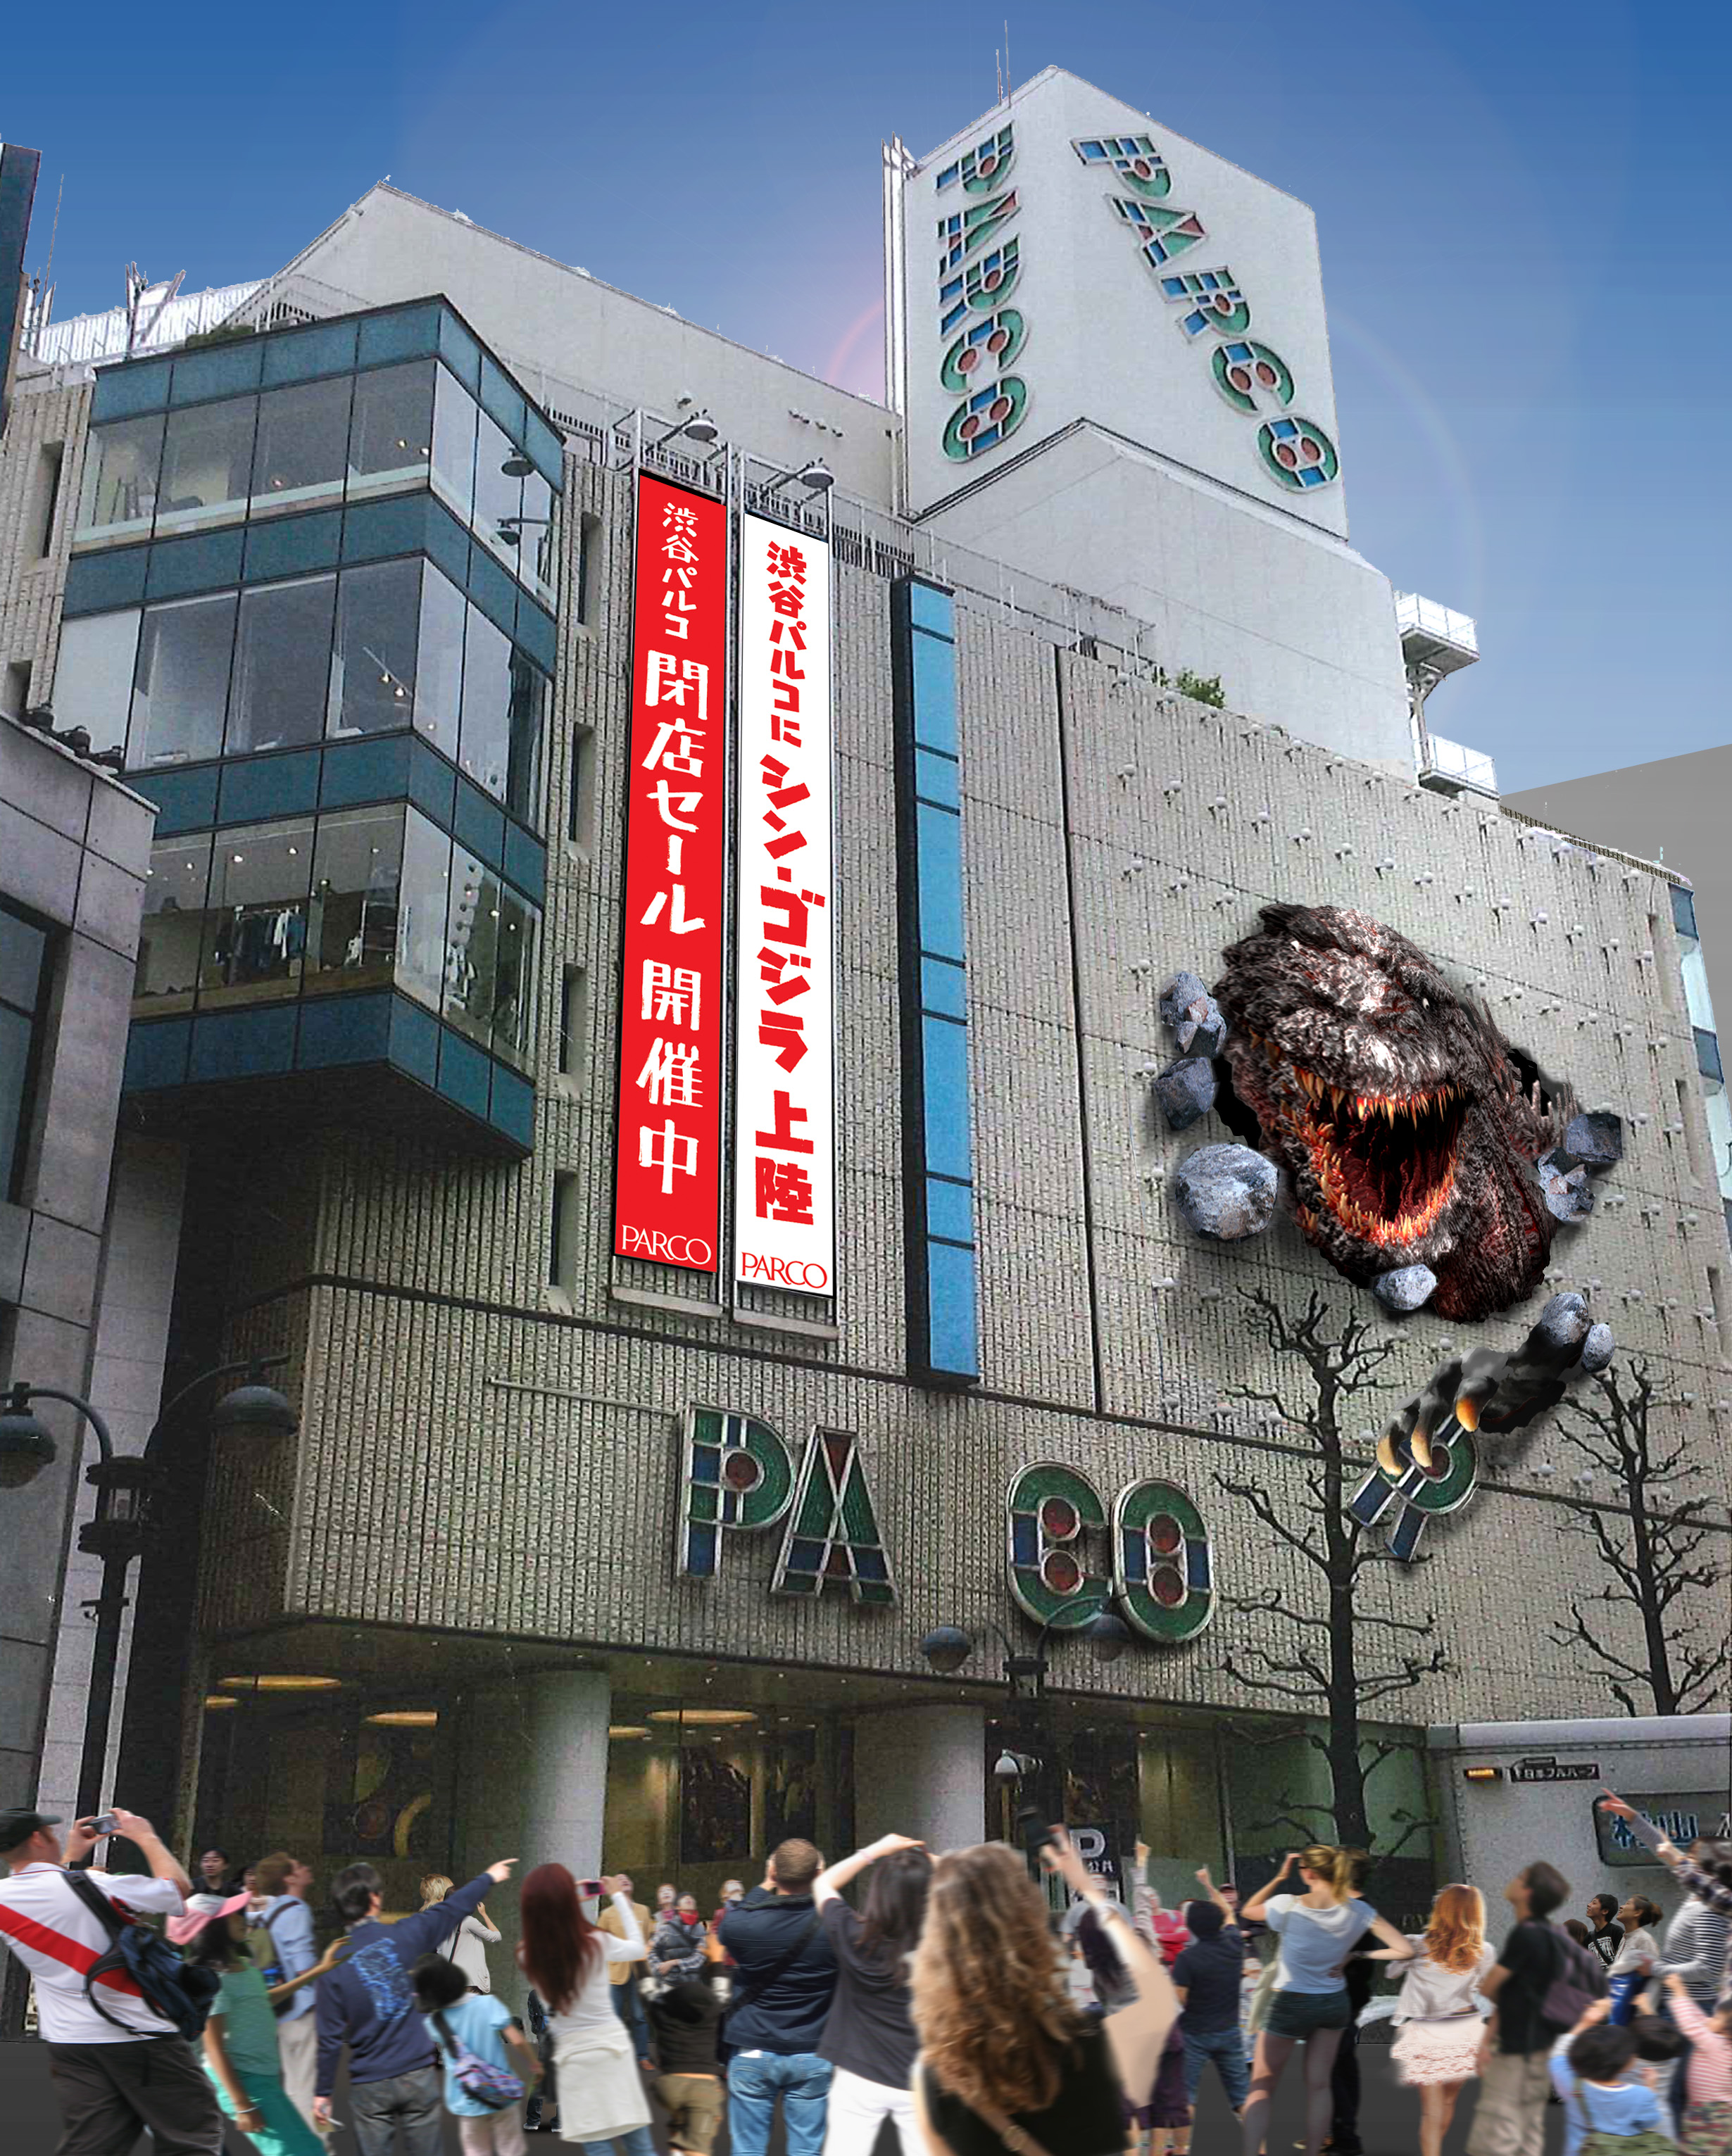 渋谷にゴジラが現れる 渋谷パルコに シン ゴジラ 巨大壁面オブジェが登場 株式会社パルコのプレスリリース